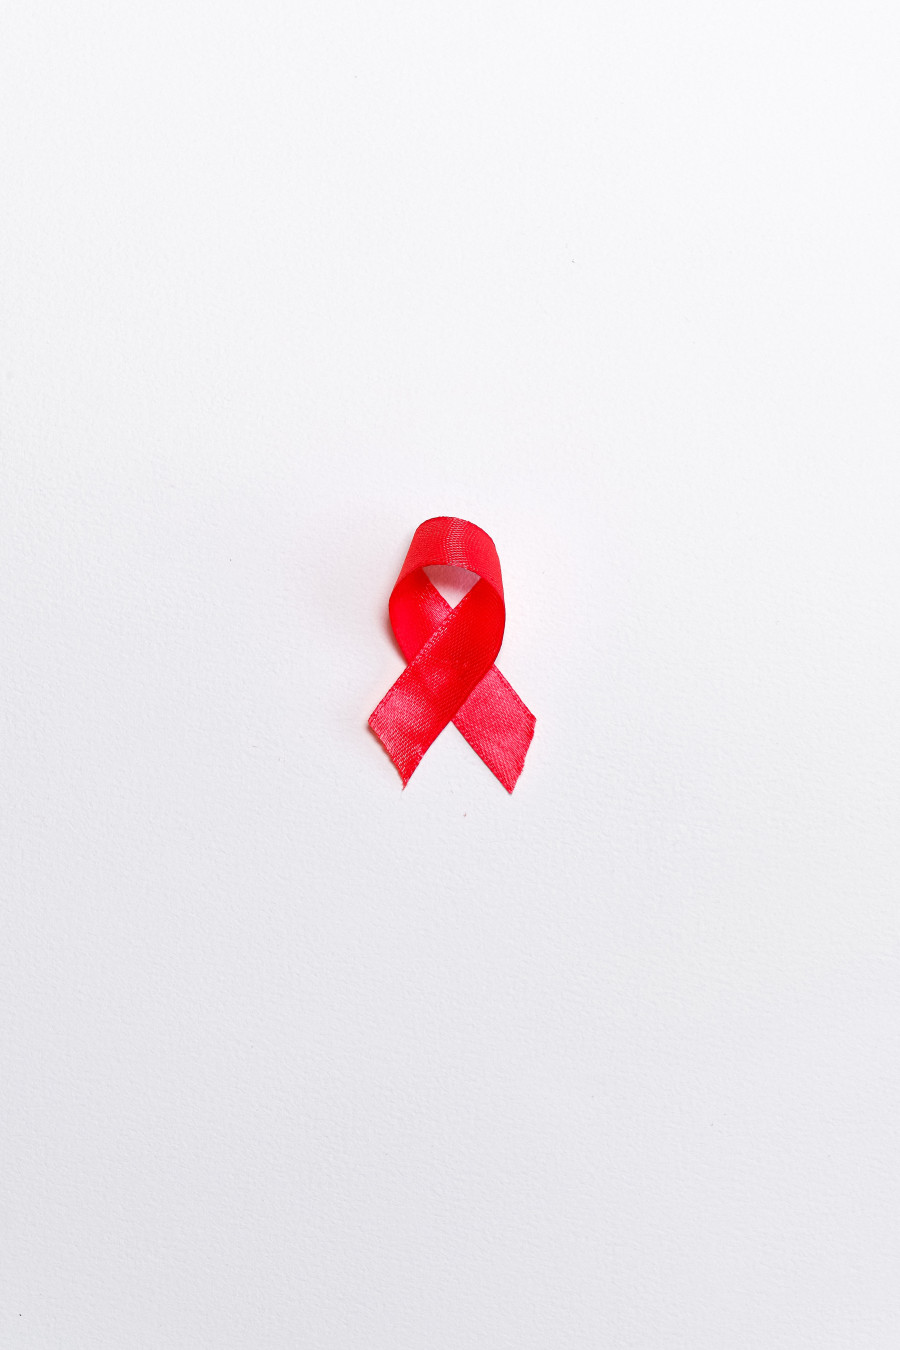 Έρχεται το Εθνικό Μητρώο ασθενών με HIV- Με ηλεκτρονική συνταγογράφηση τα αντιρετροϊκά φάρμακα